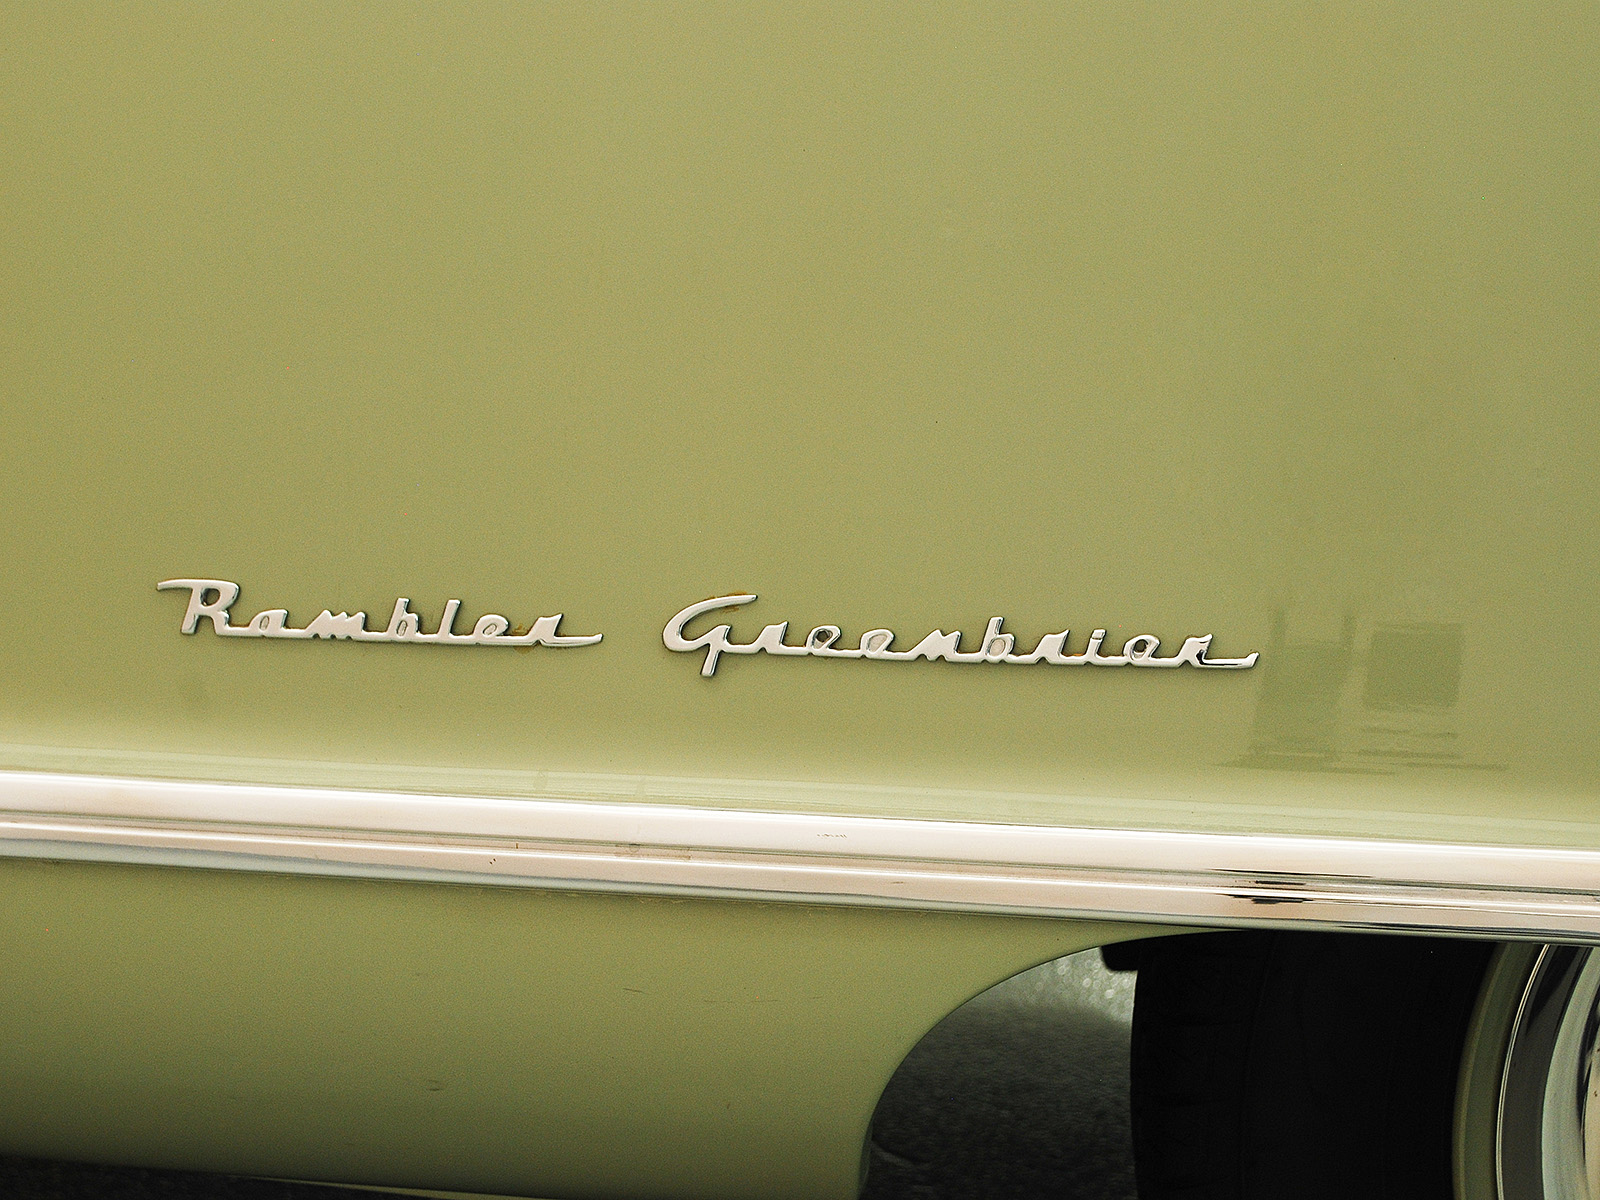 1951 nash rambler custom